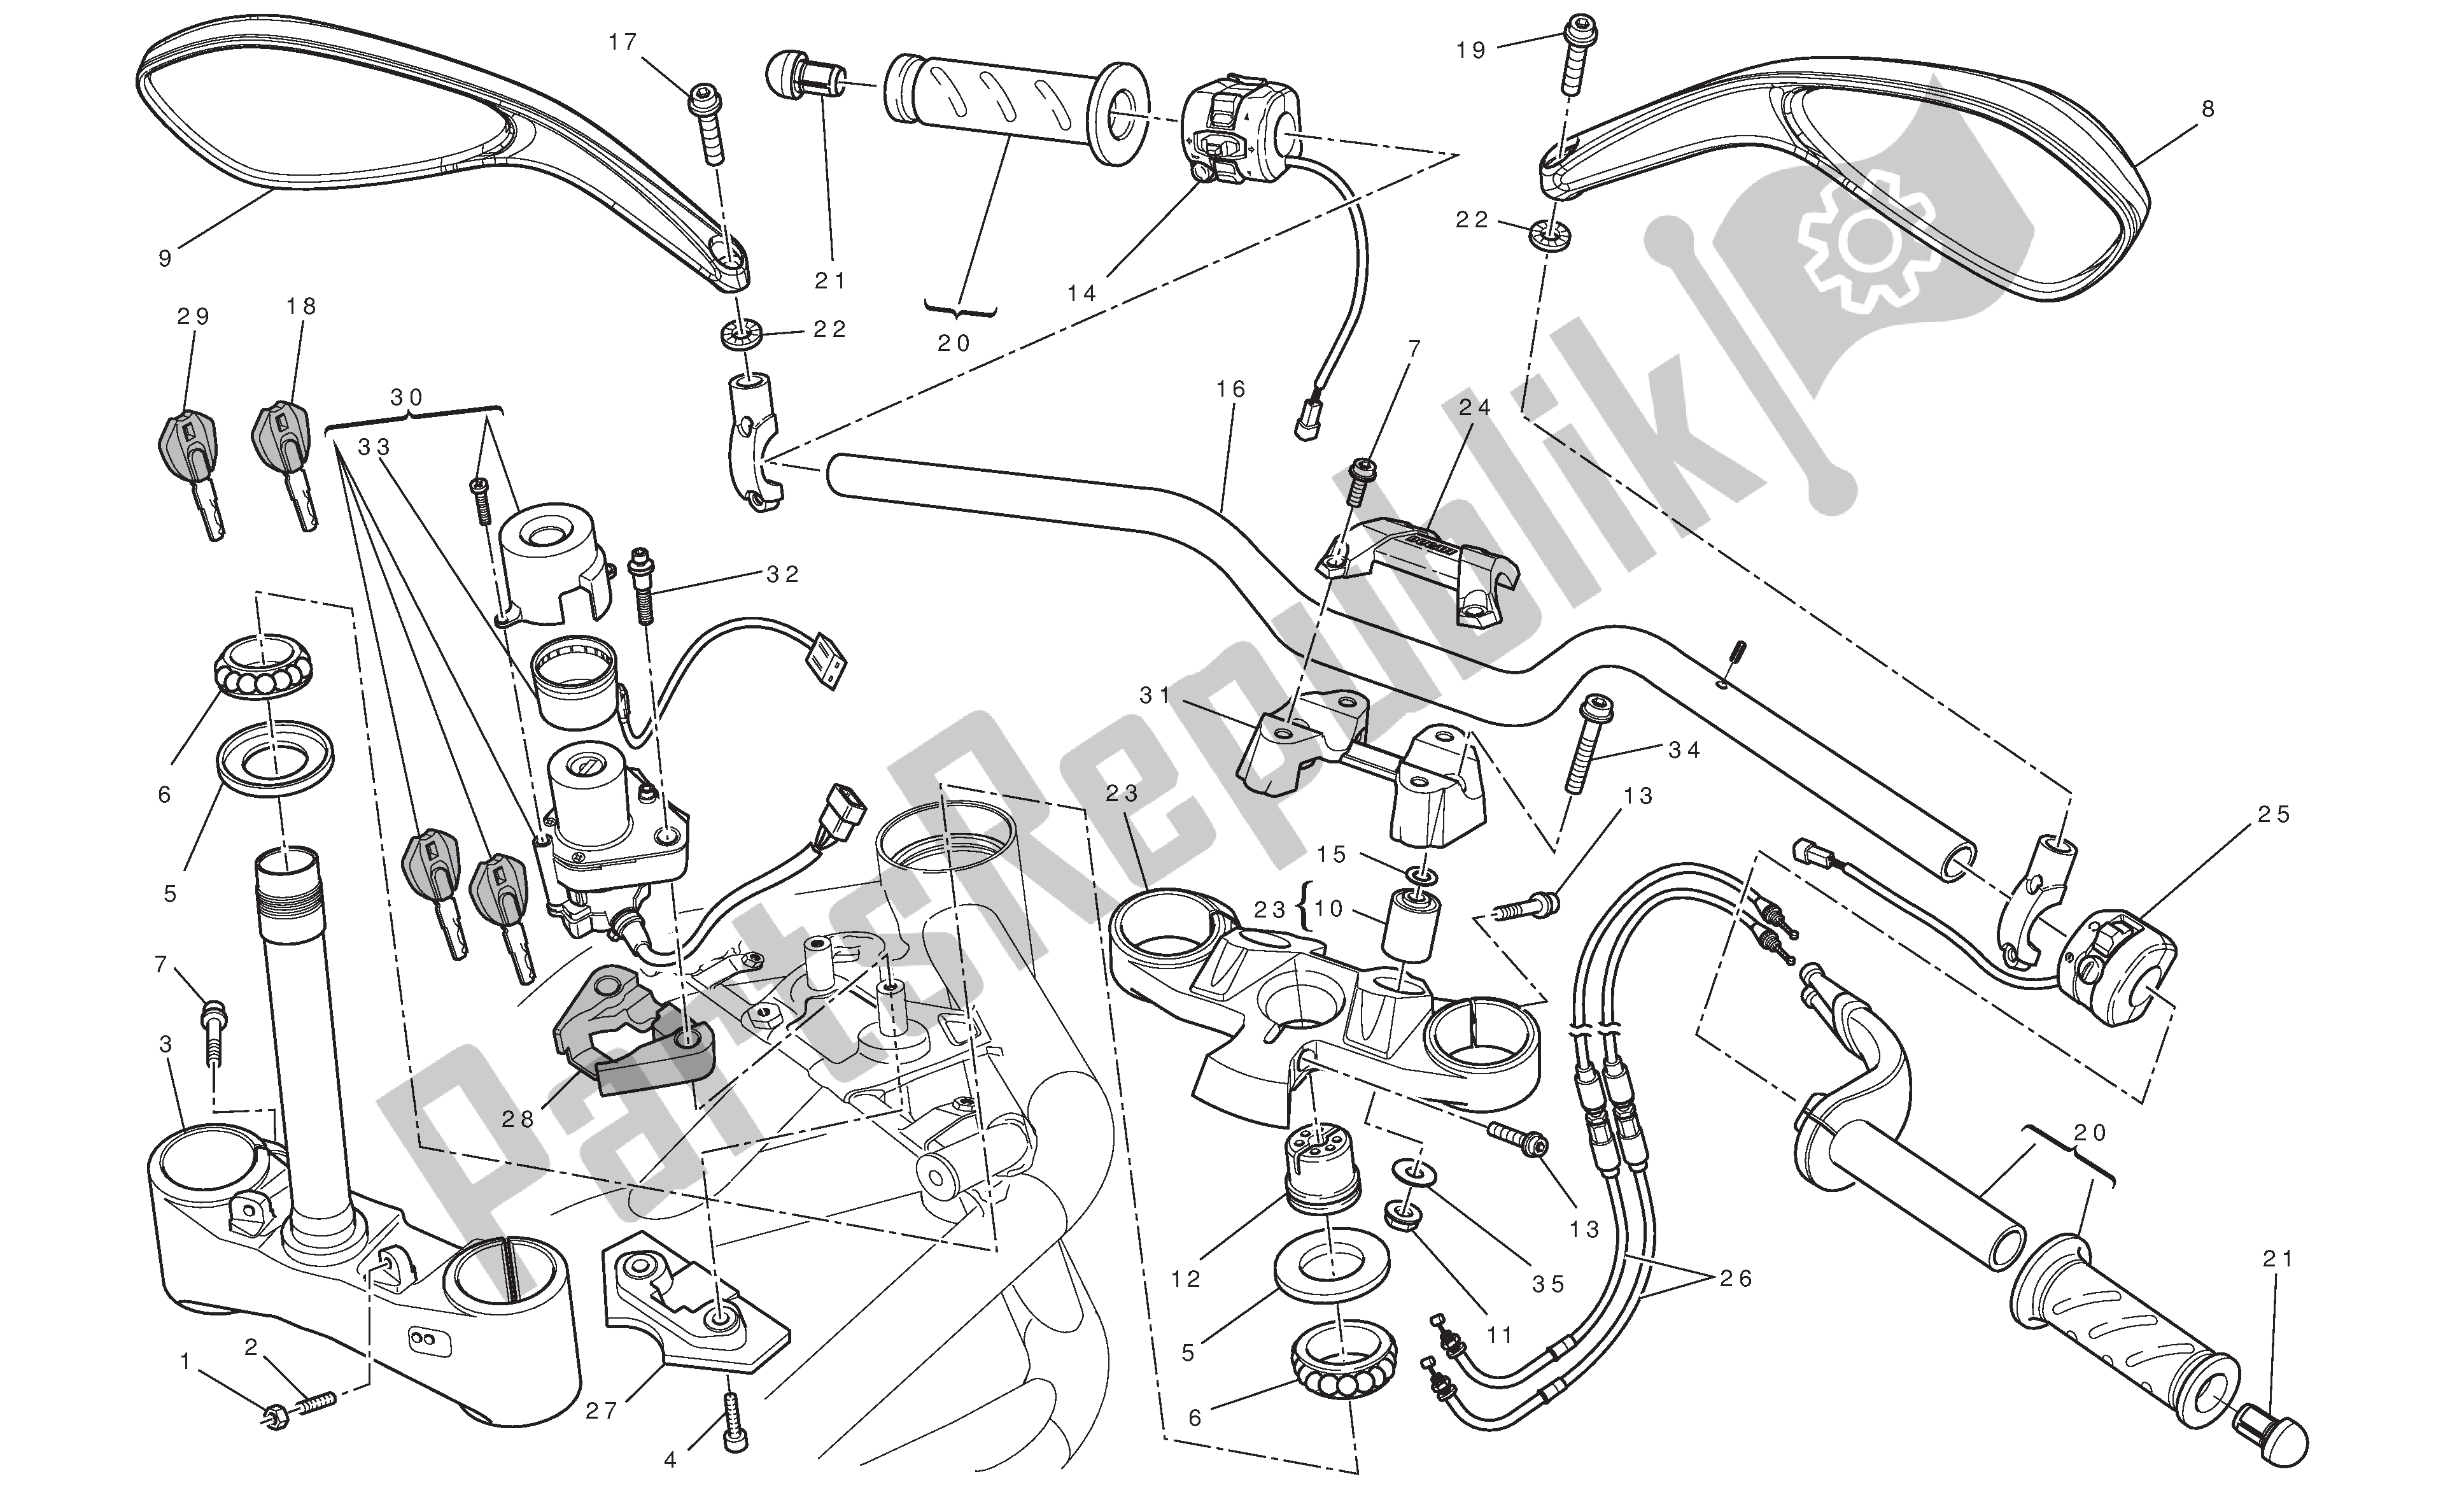 Todas las partes para Manillar Y Controles de Ducati Streetfighter 848 2012